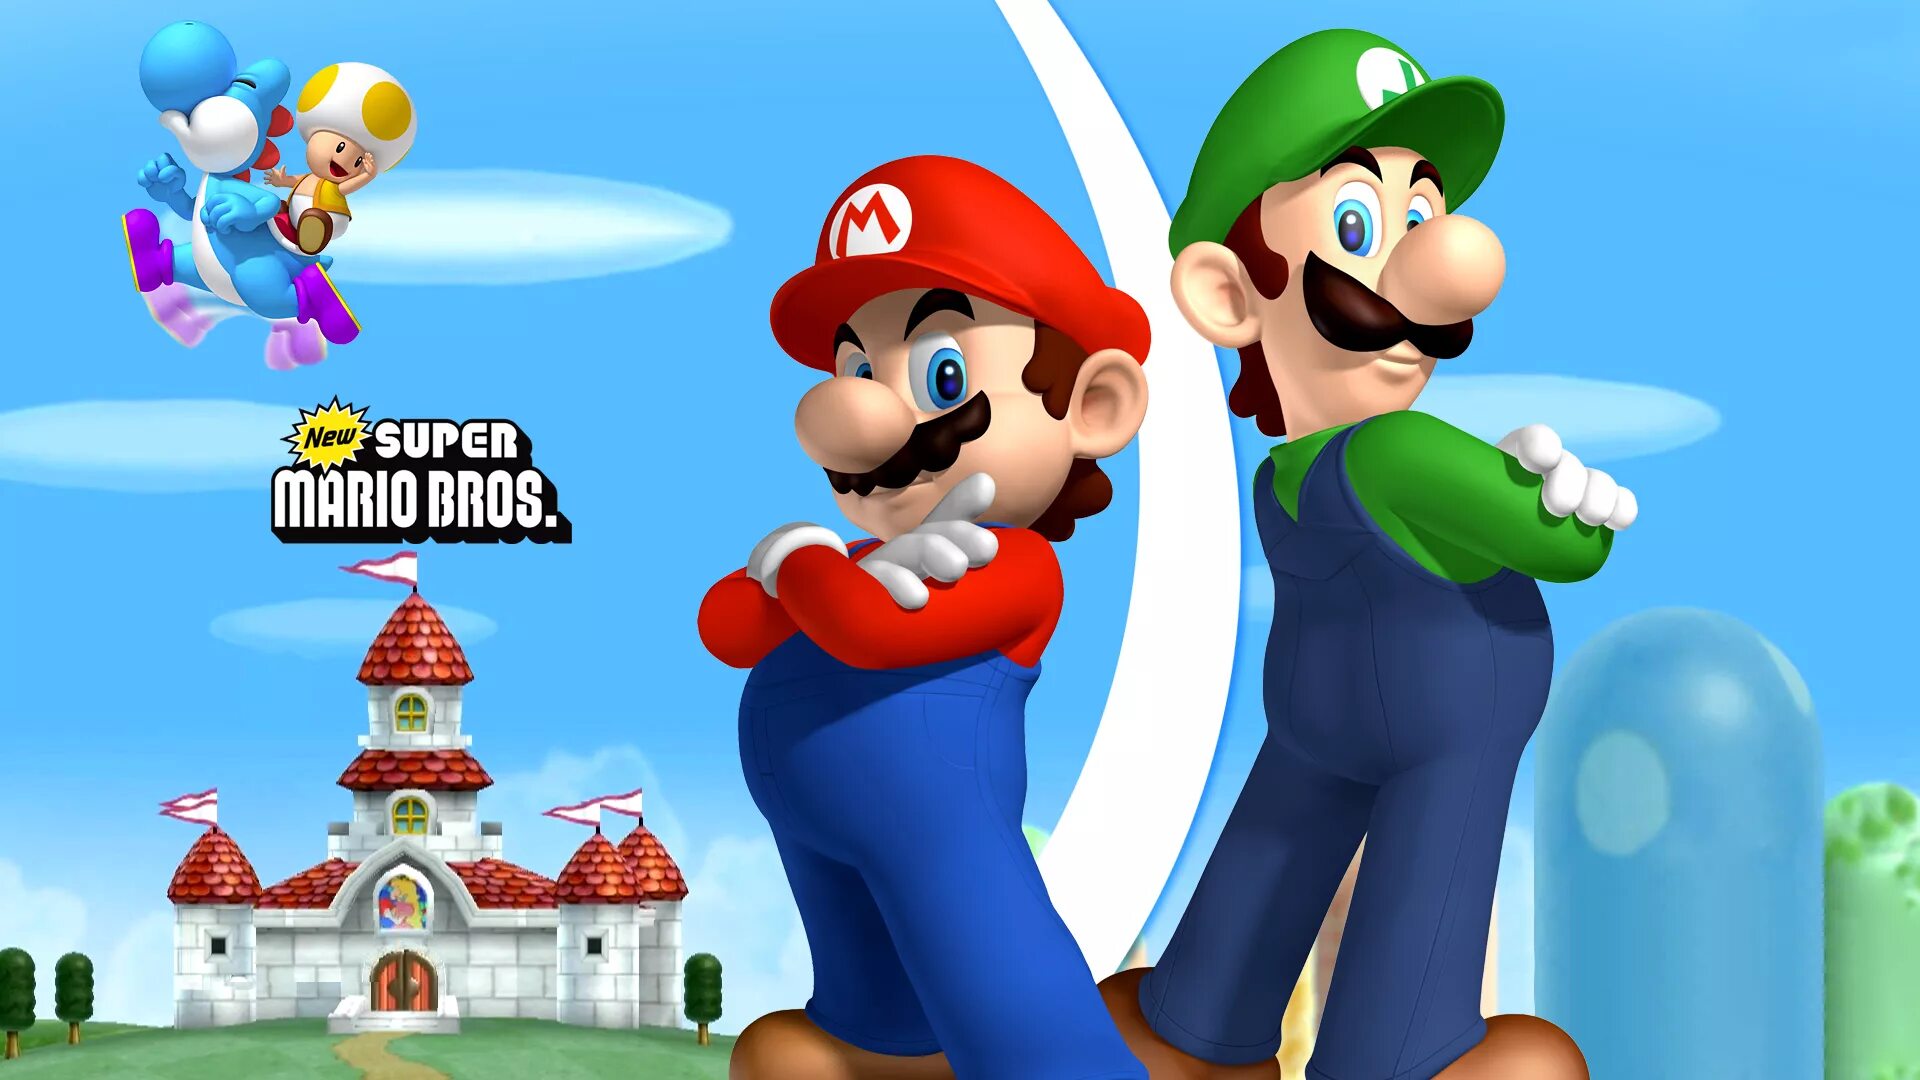 Mario bros theme. Mario 1999. Марио и Луиджи игра. Игра Марио супер Марио БРОС. Игры New super Mario Bros Wii.